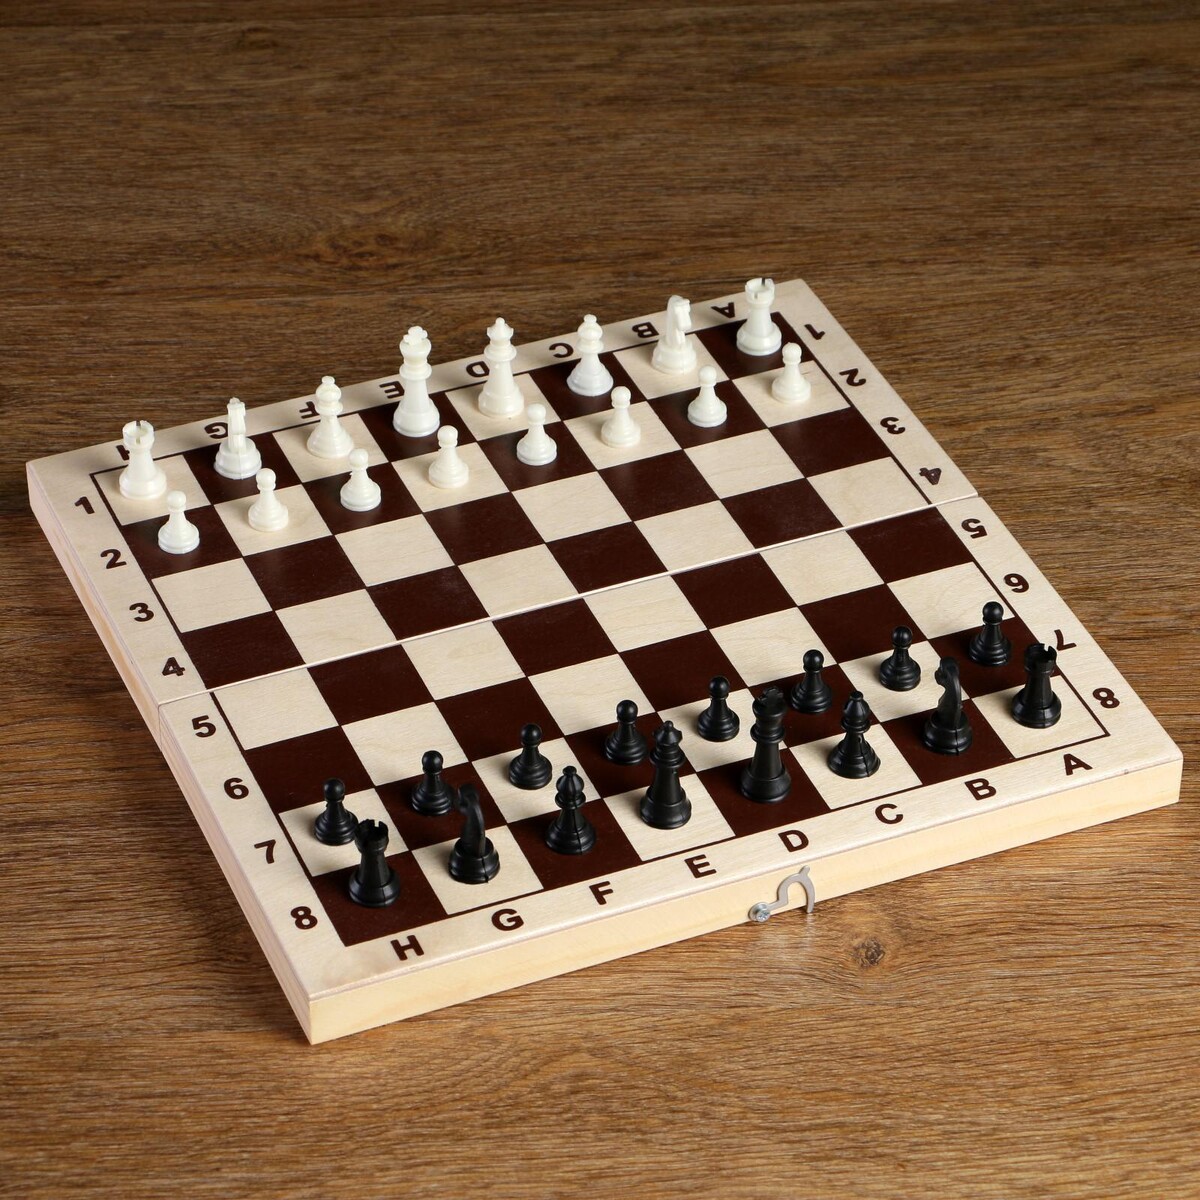 Шахматные фигуры, пластик, король h-4.2 см, пешка h-2 см король шаманов том 9